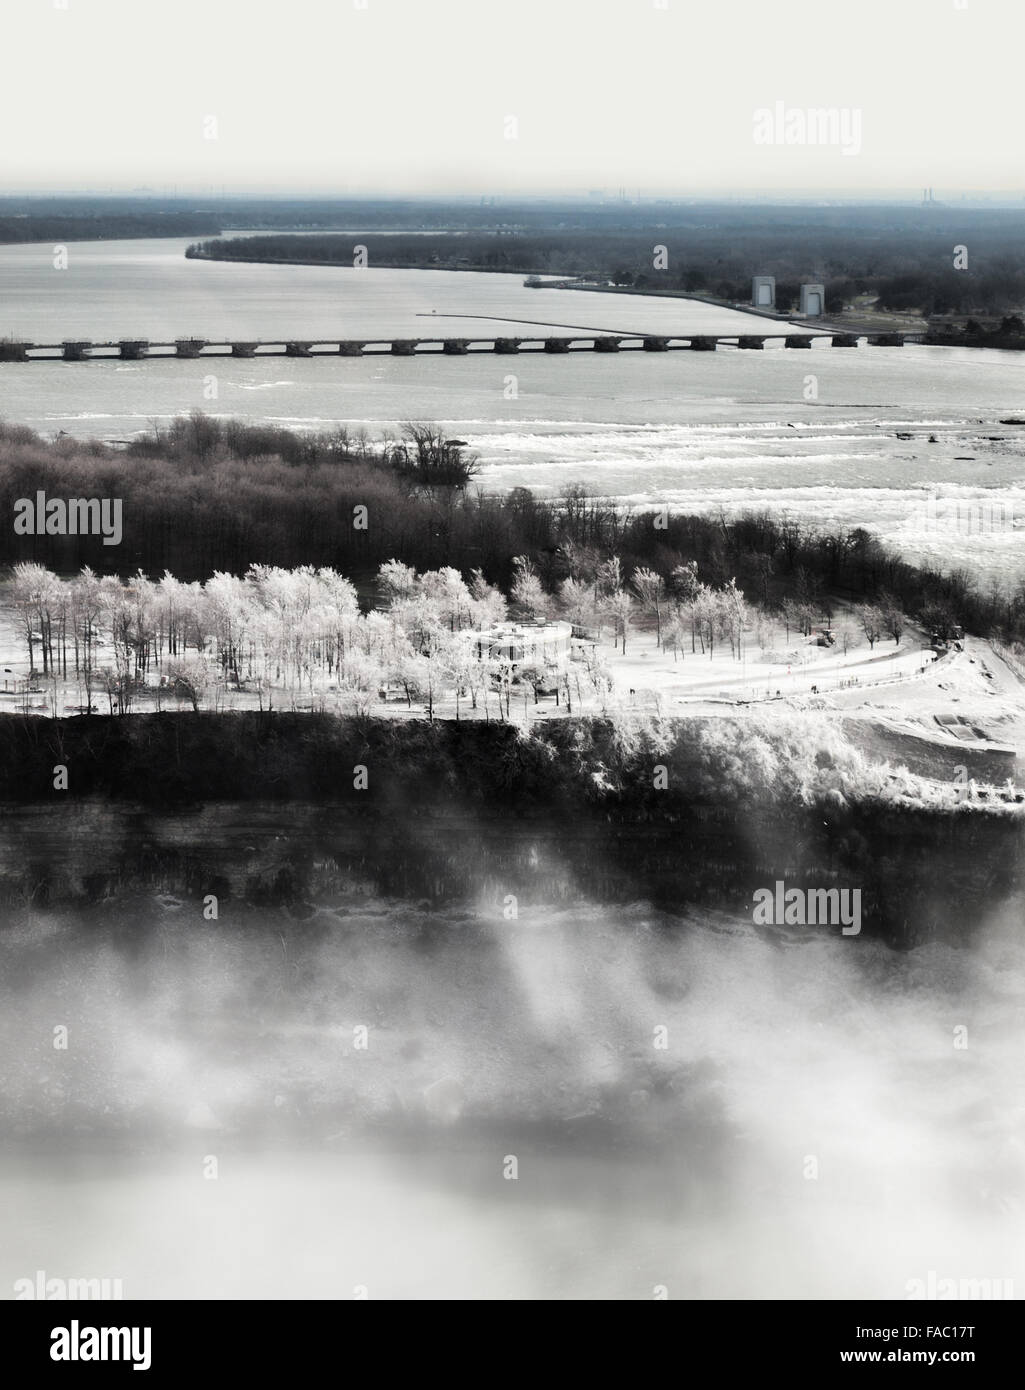 Vista del lado de Nueva York de las Cataratas del Niagara en invierno con el centro de visitantes y la niebla y el vapor de las cataratas. Tomada desde el Foto de stock